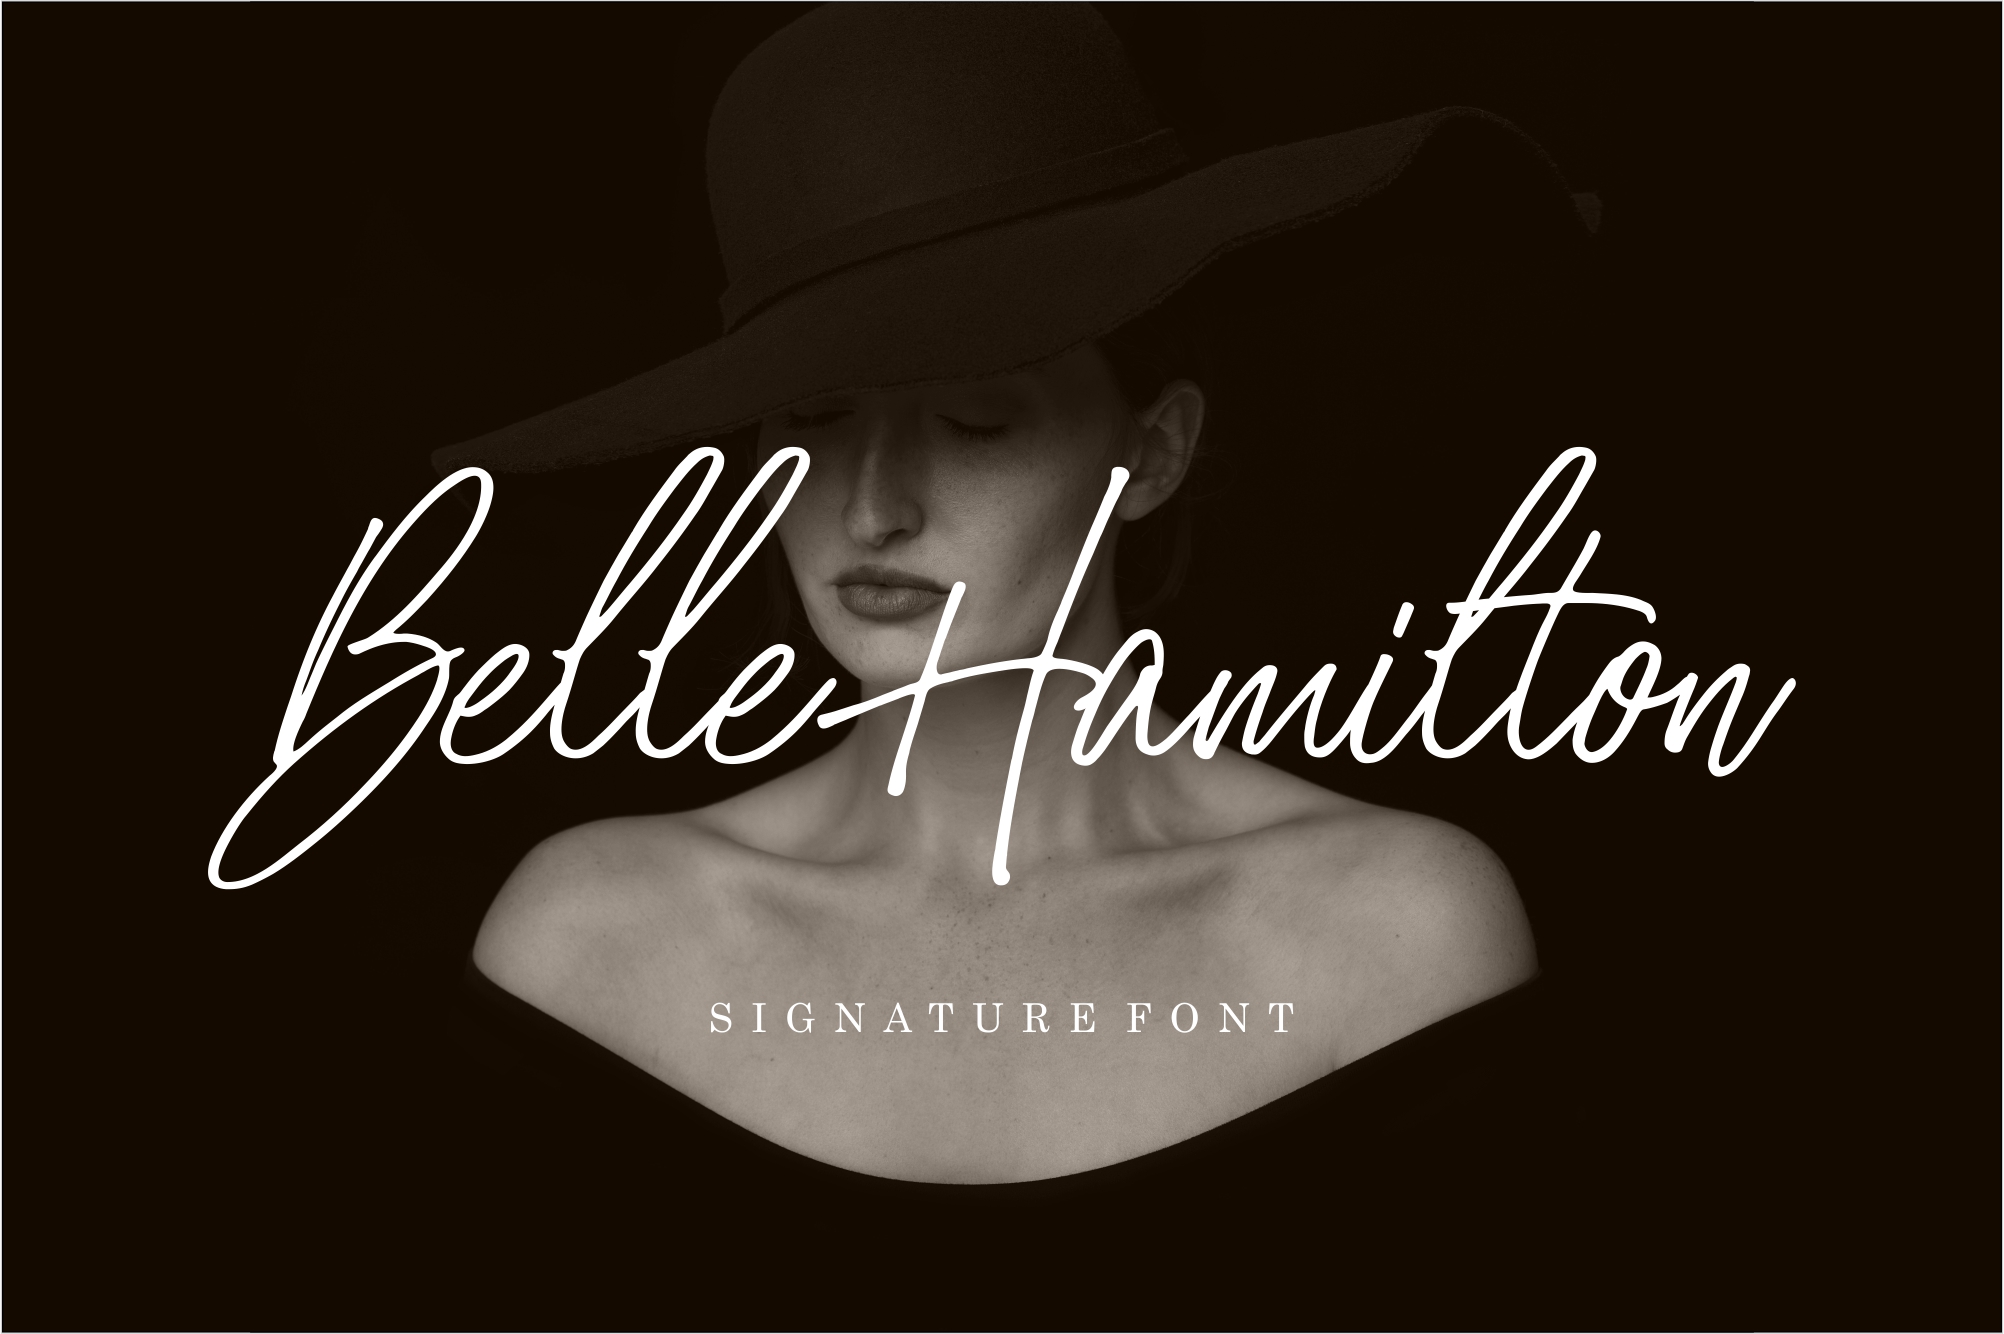 Belle Hamilton Font